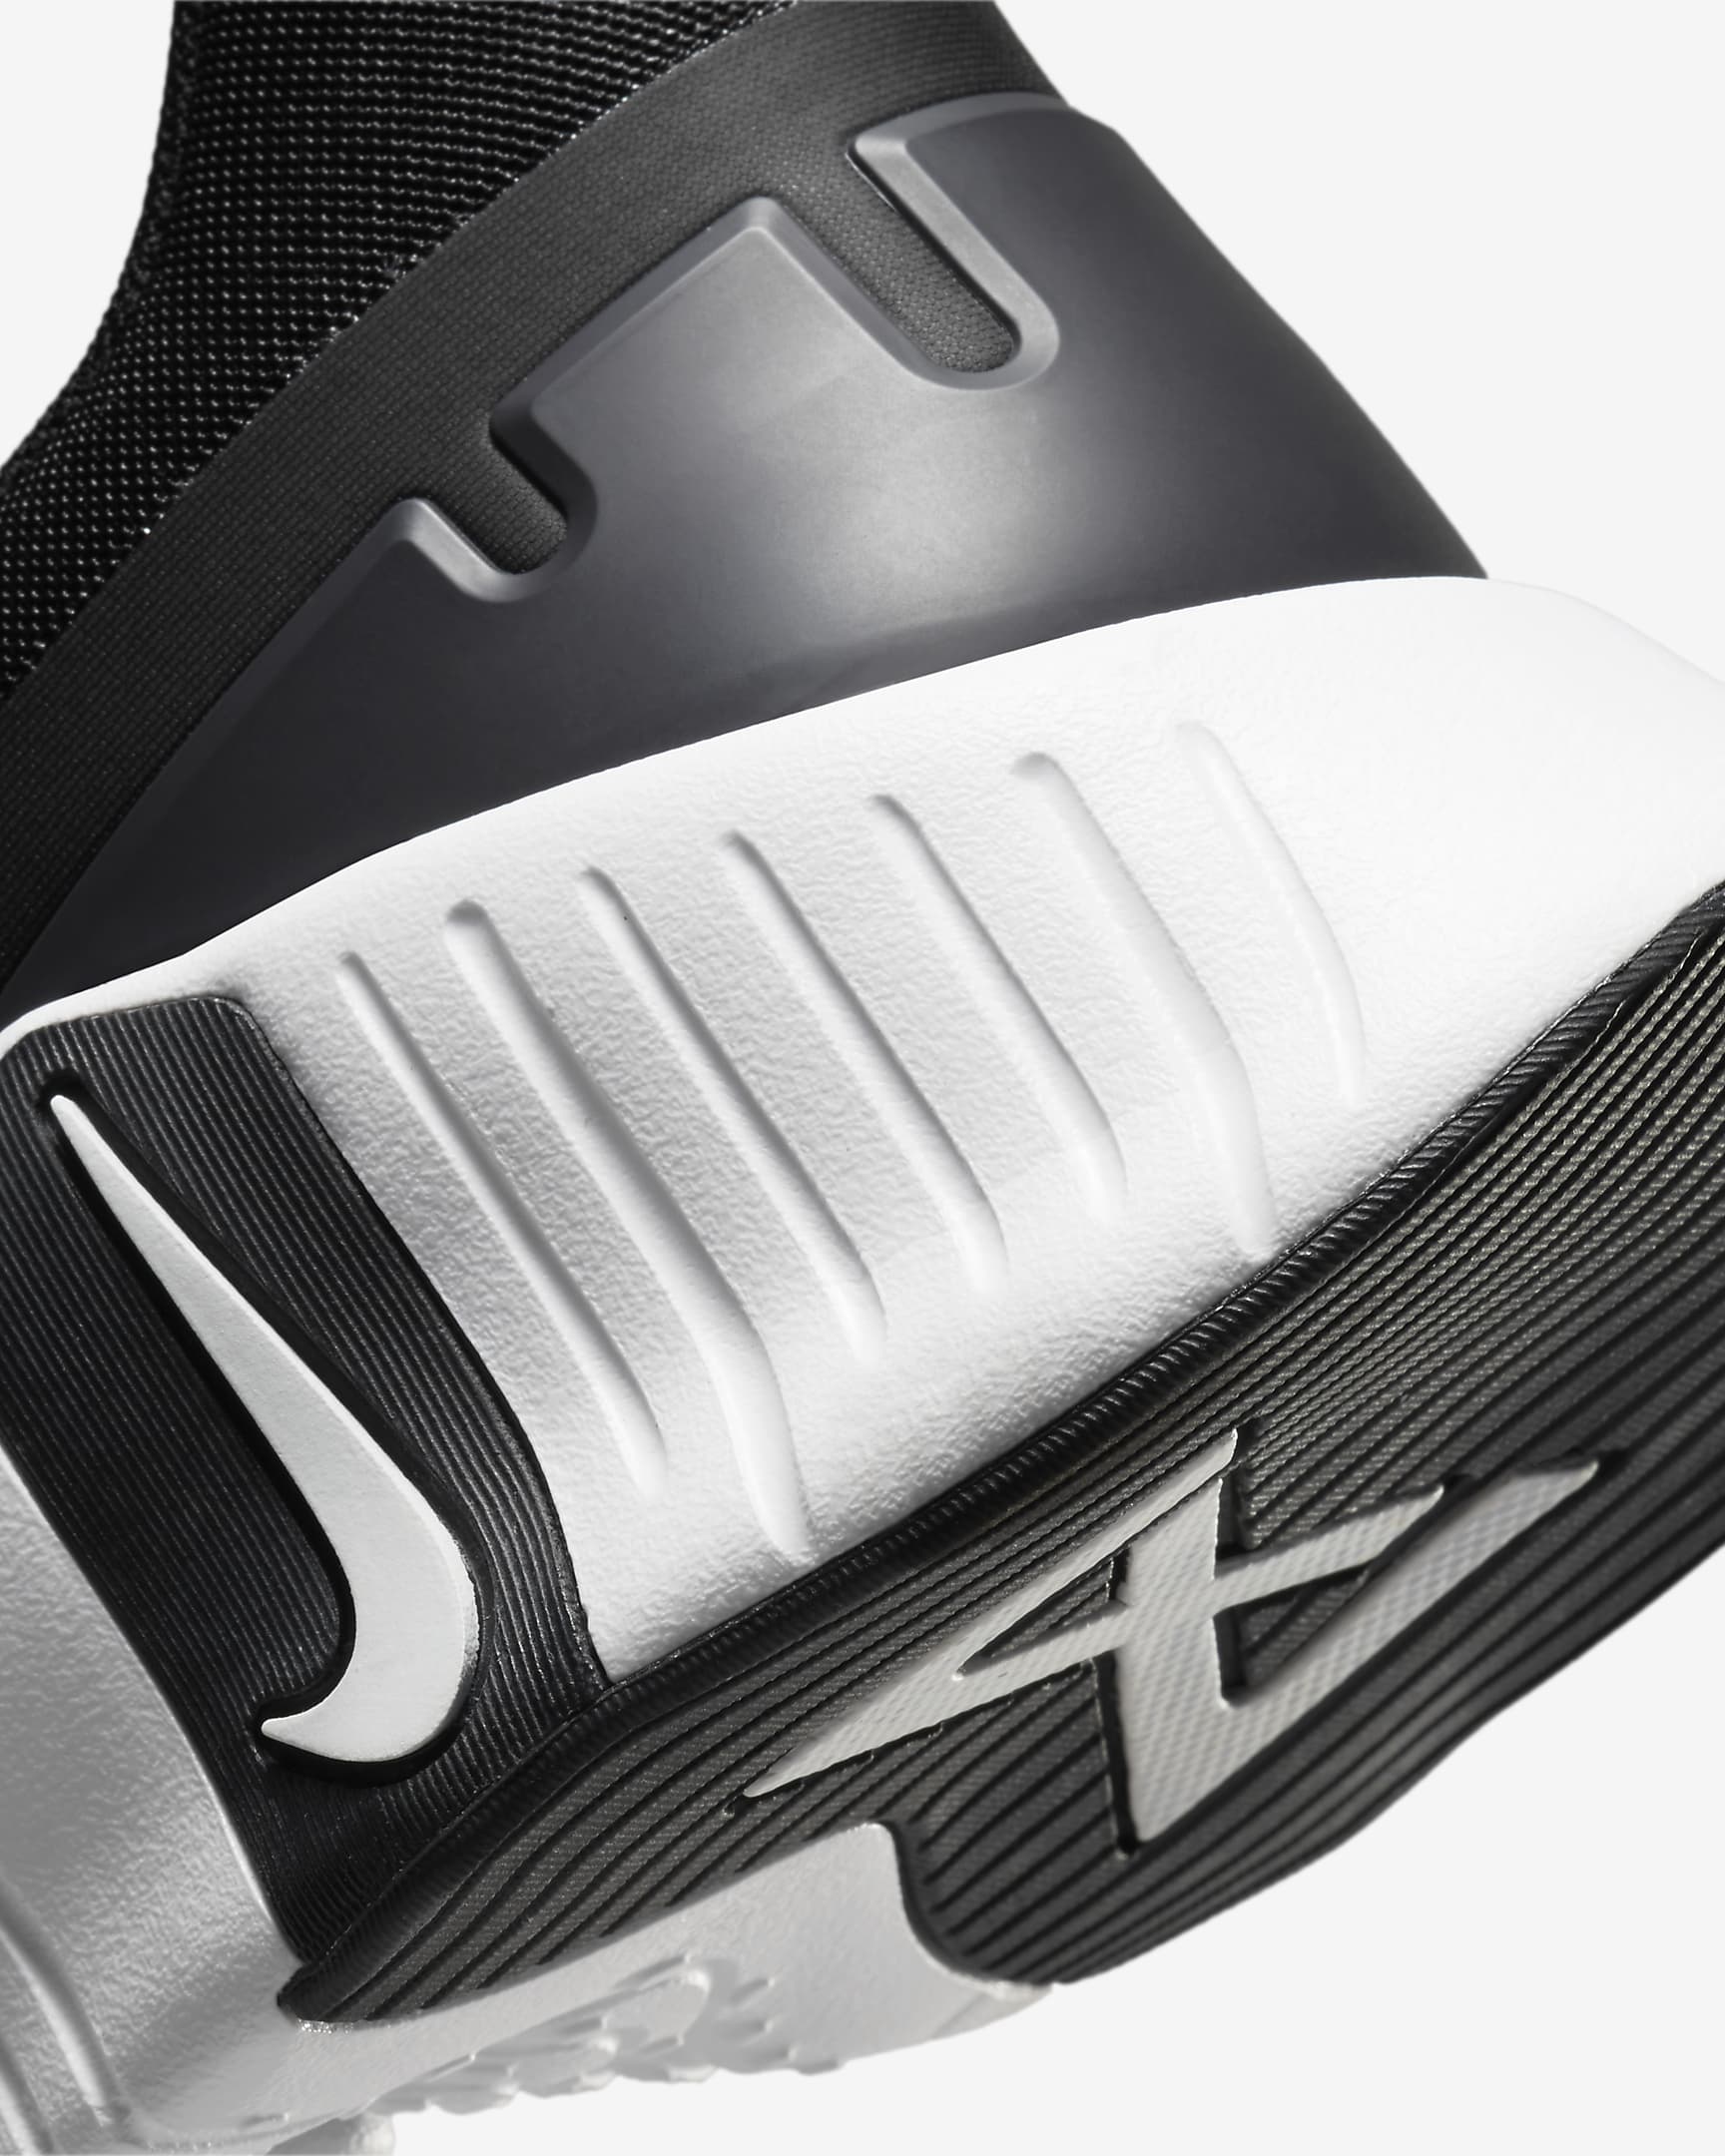 Nike Free Metcon 5 Men's Workout Shoes - Black/Anthracite/White